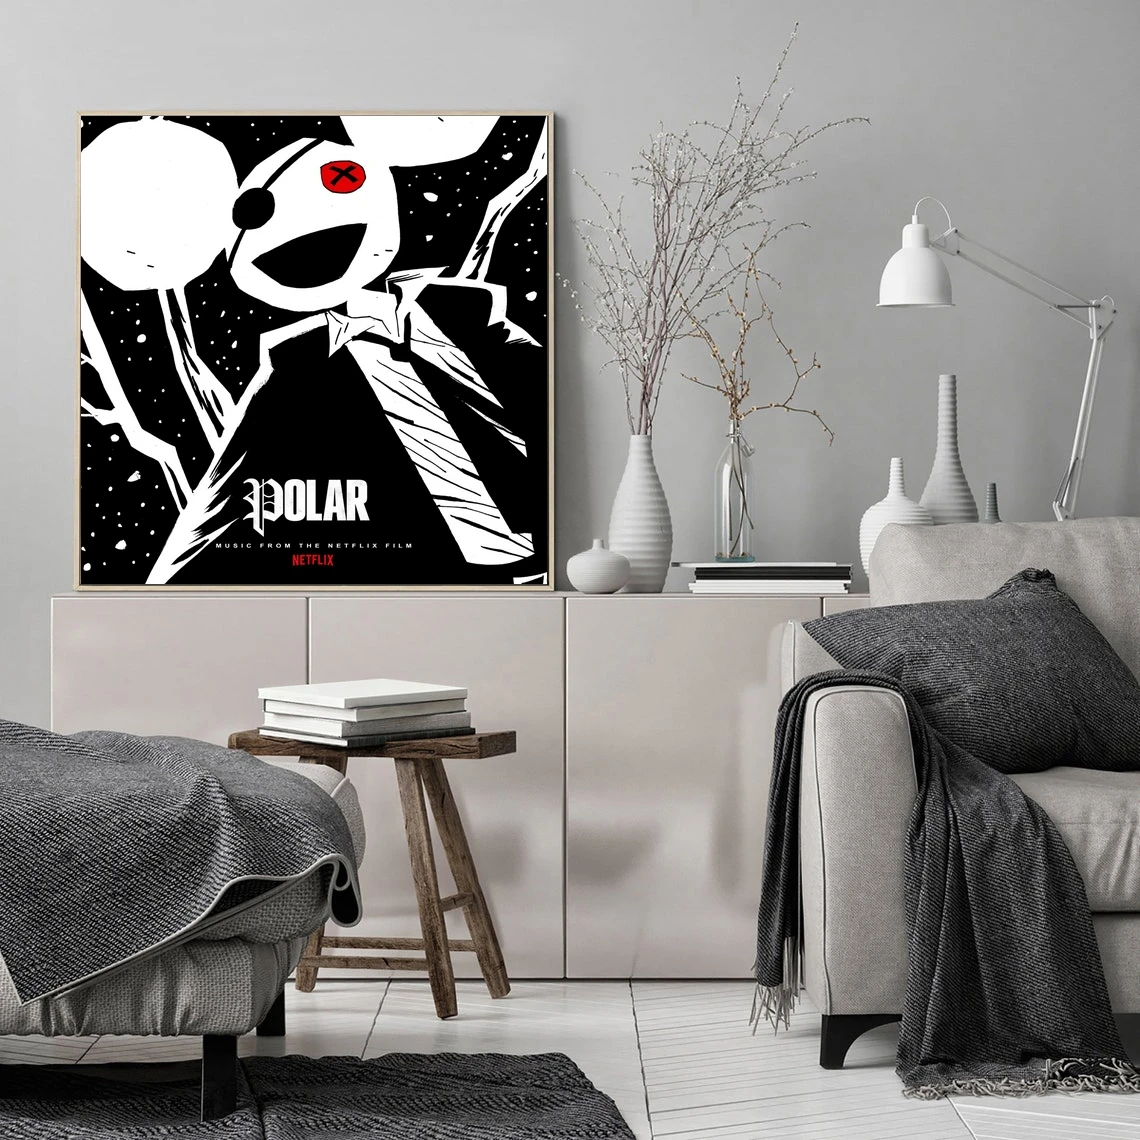 

Полярный музыкальный альбом Deadmau5, Постер, Фотопечать, Звездный певец, рэп, поп-музыка, постер, украшение для дома